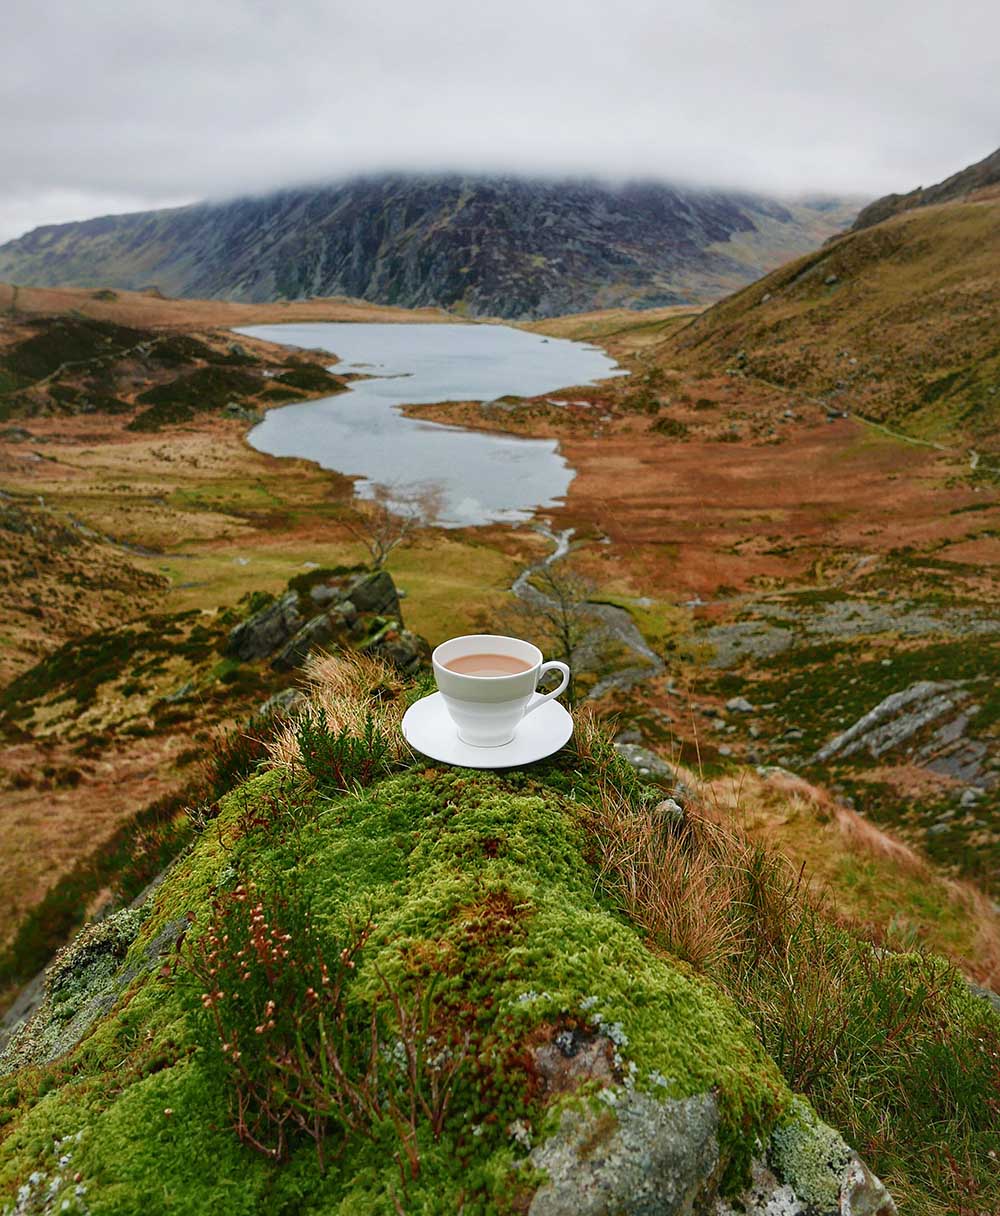 Snowdonia National Park, Wales - Wander Wonder Blog